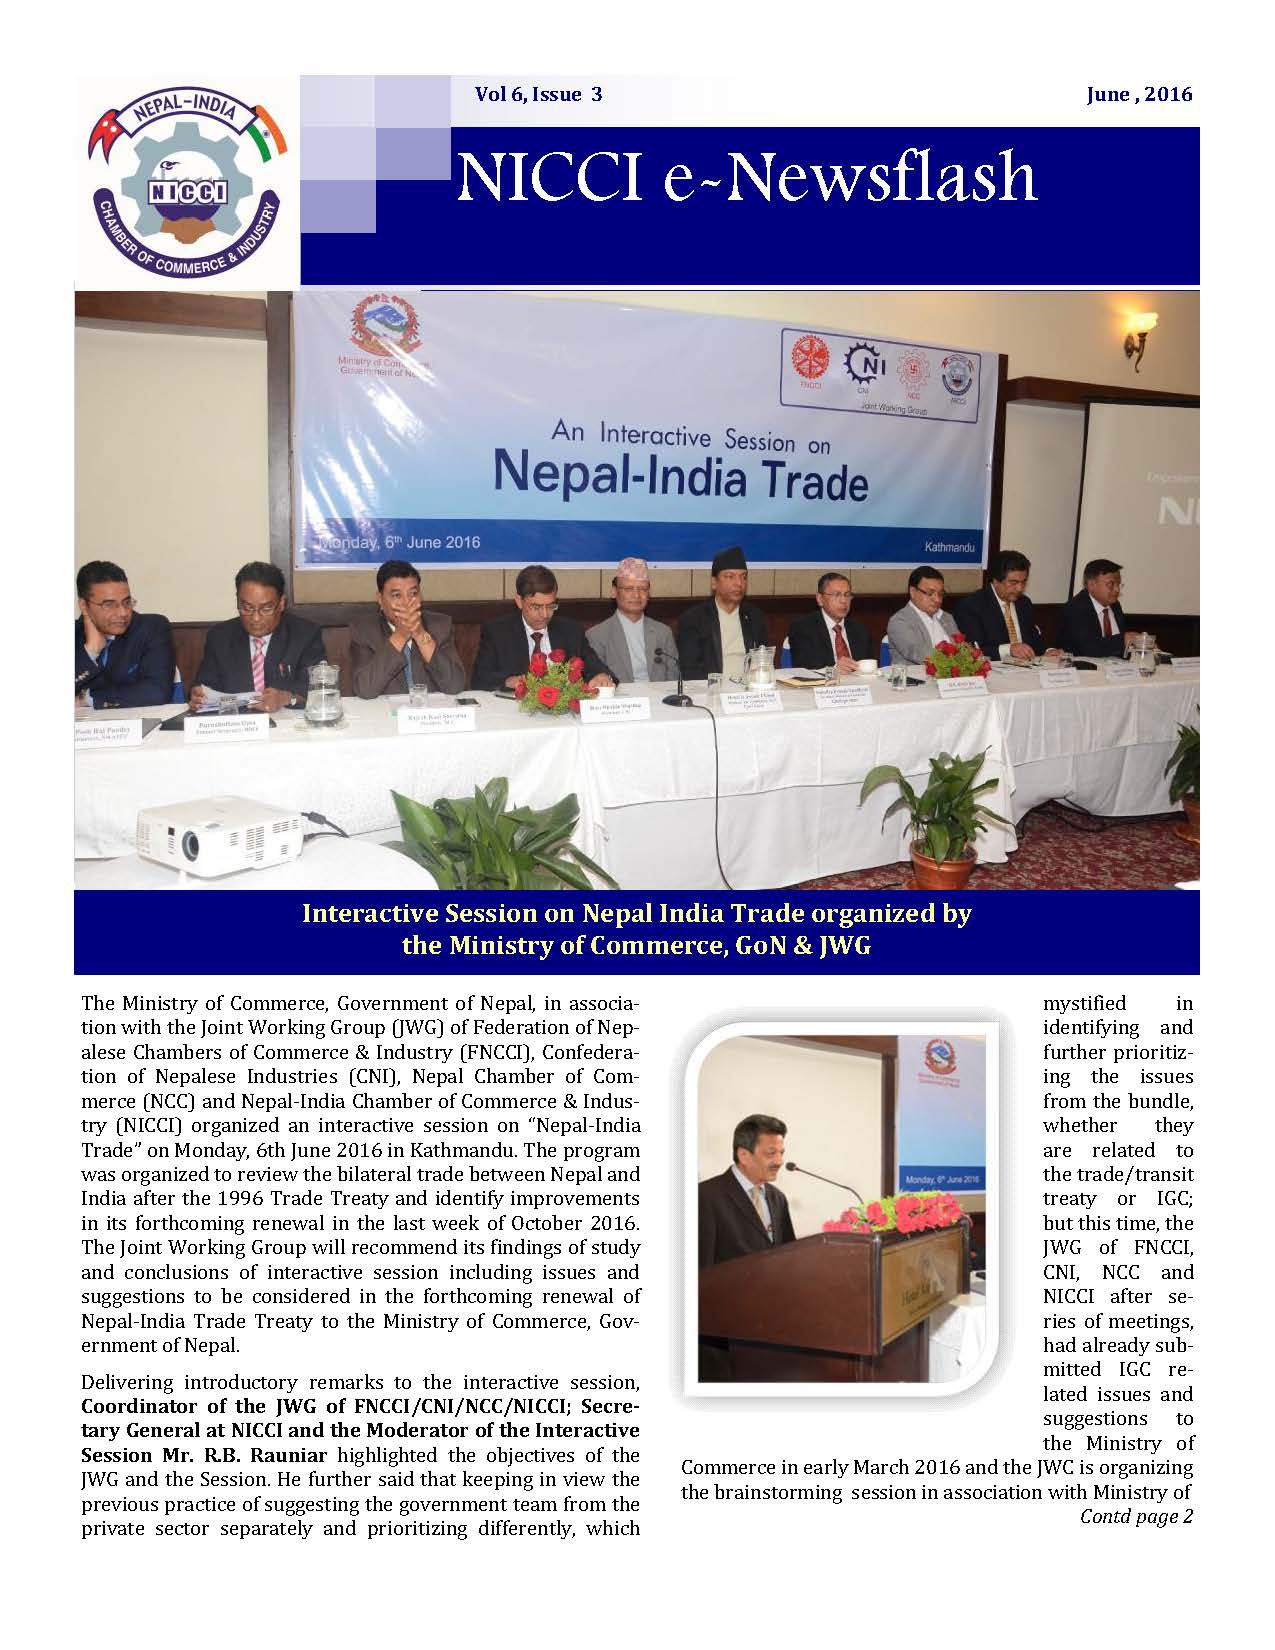 NICCI E-News Flash, June Issue